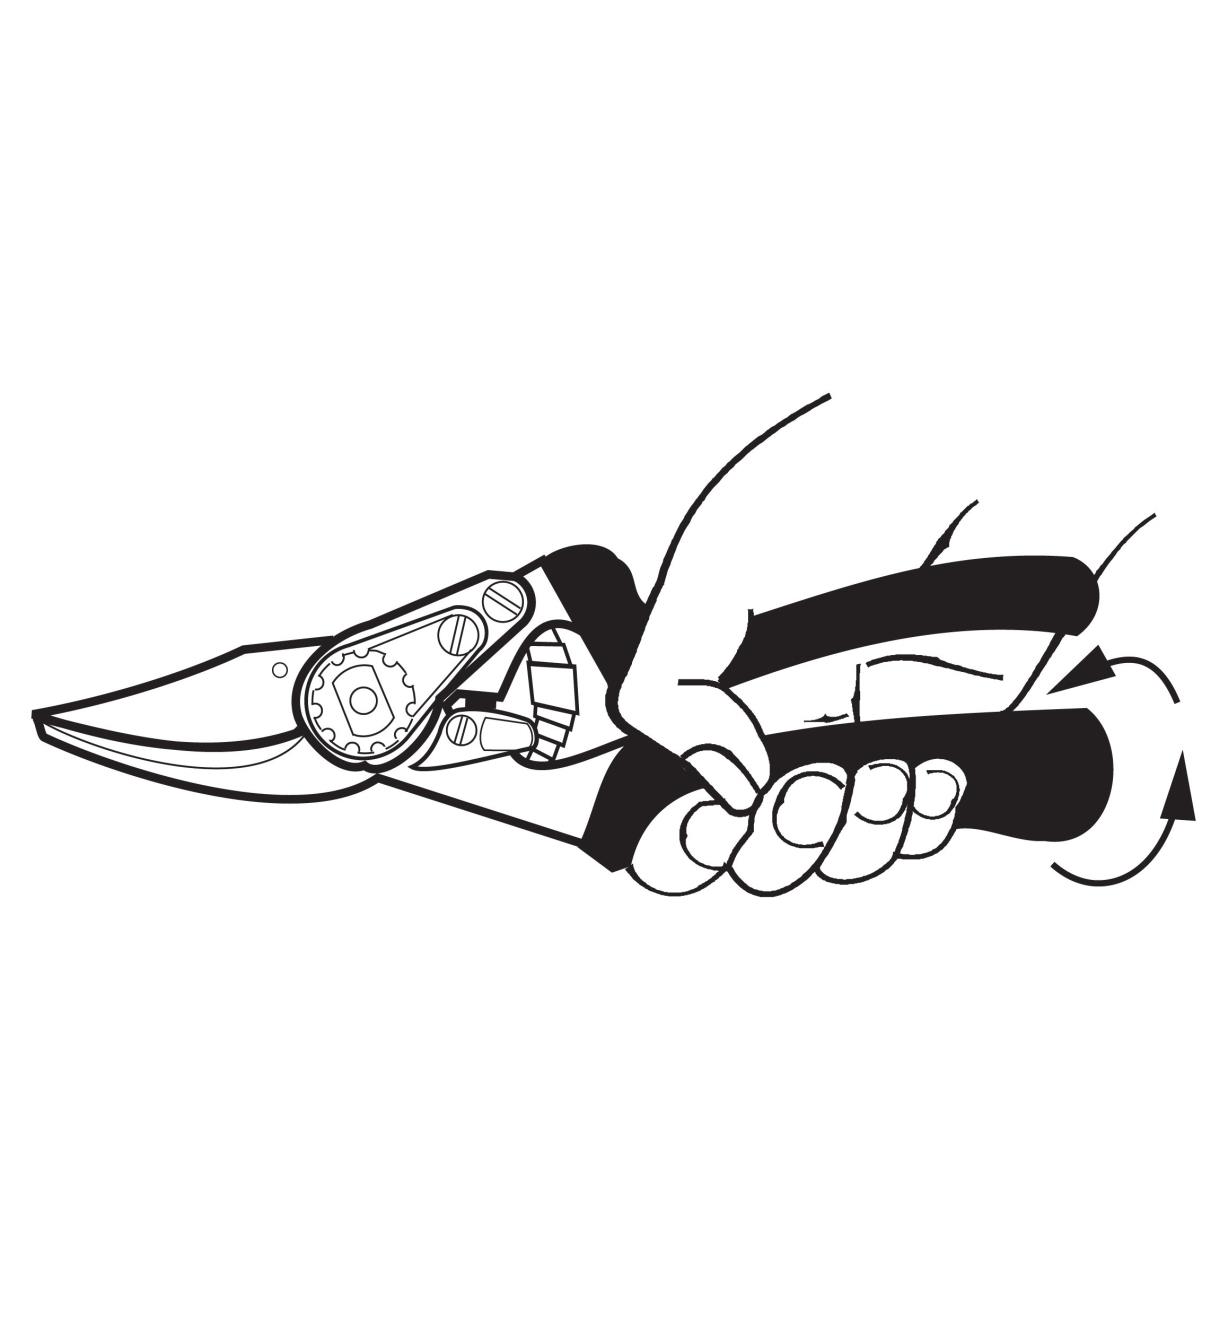 Illustration montrant la poignée inférieure du sécateur tourner lorsque les deux poignées sont pressées l'une contre l'autre